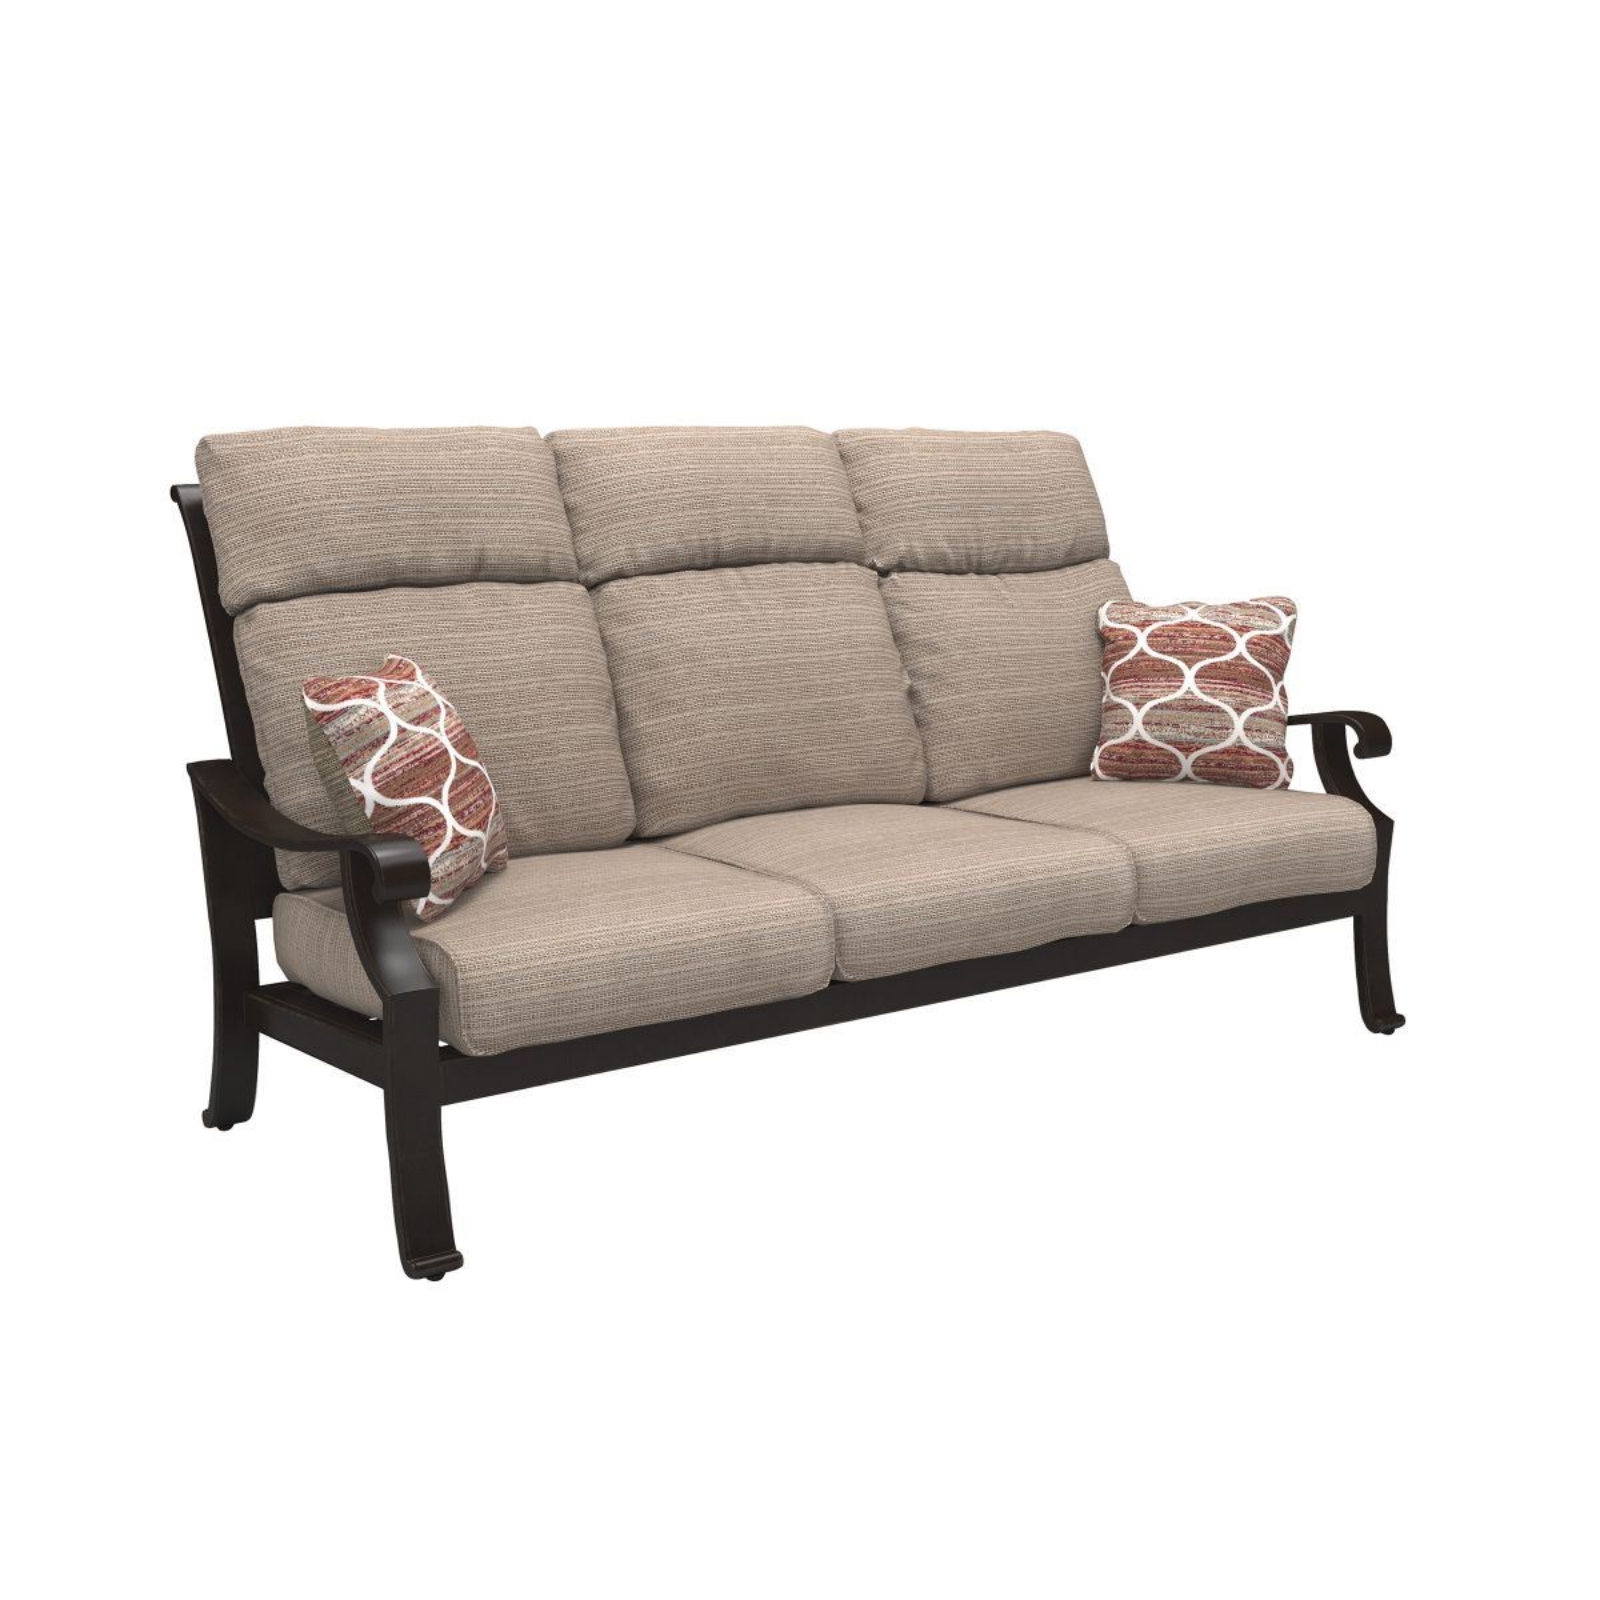 Picture of Chestnut Ridge Patio Sofa